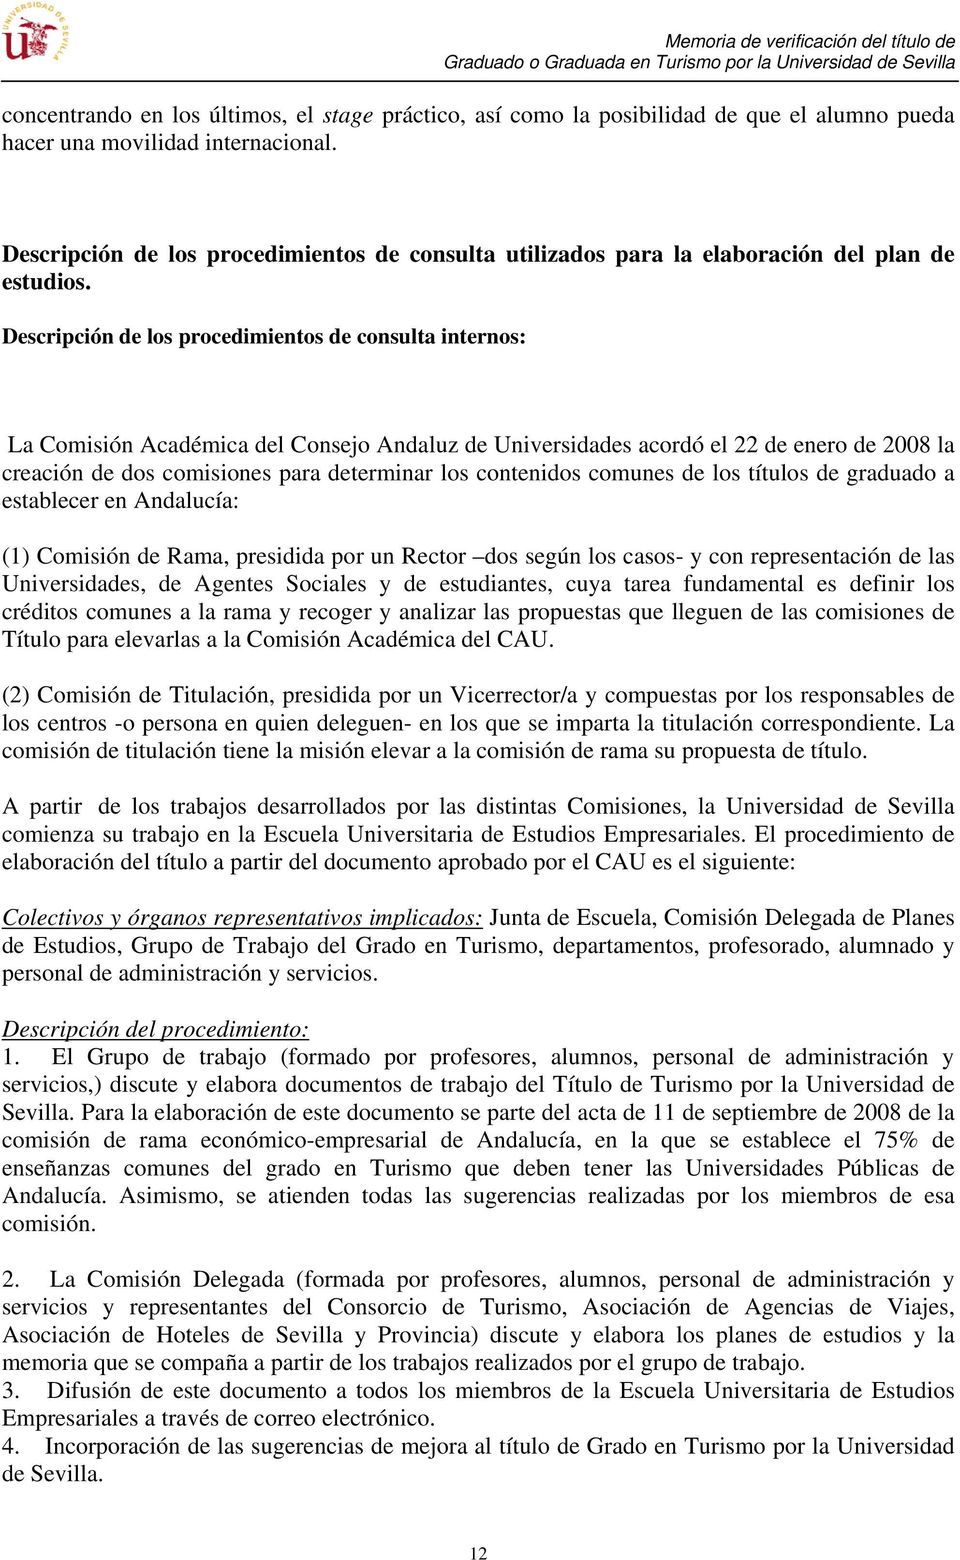 Descripción de los procedimientos de consulta internos: La Comisión Académica del Consejo Andaluz de Universidades acordó el 22 de enero de 2008 la creación de dos comisiones para determinar los